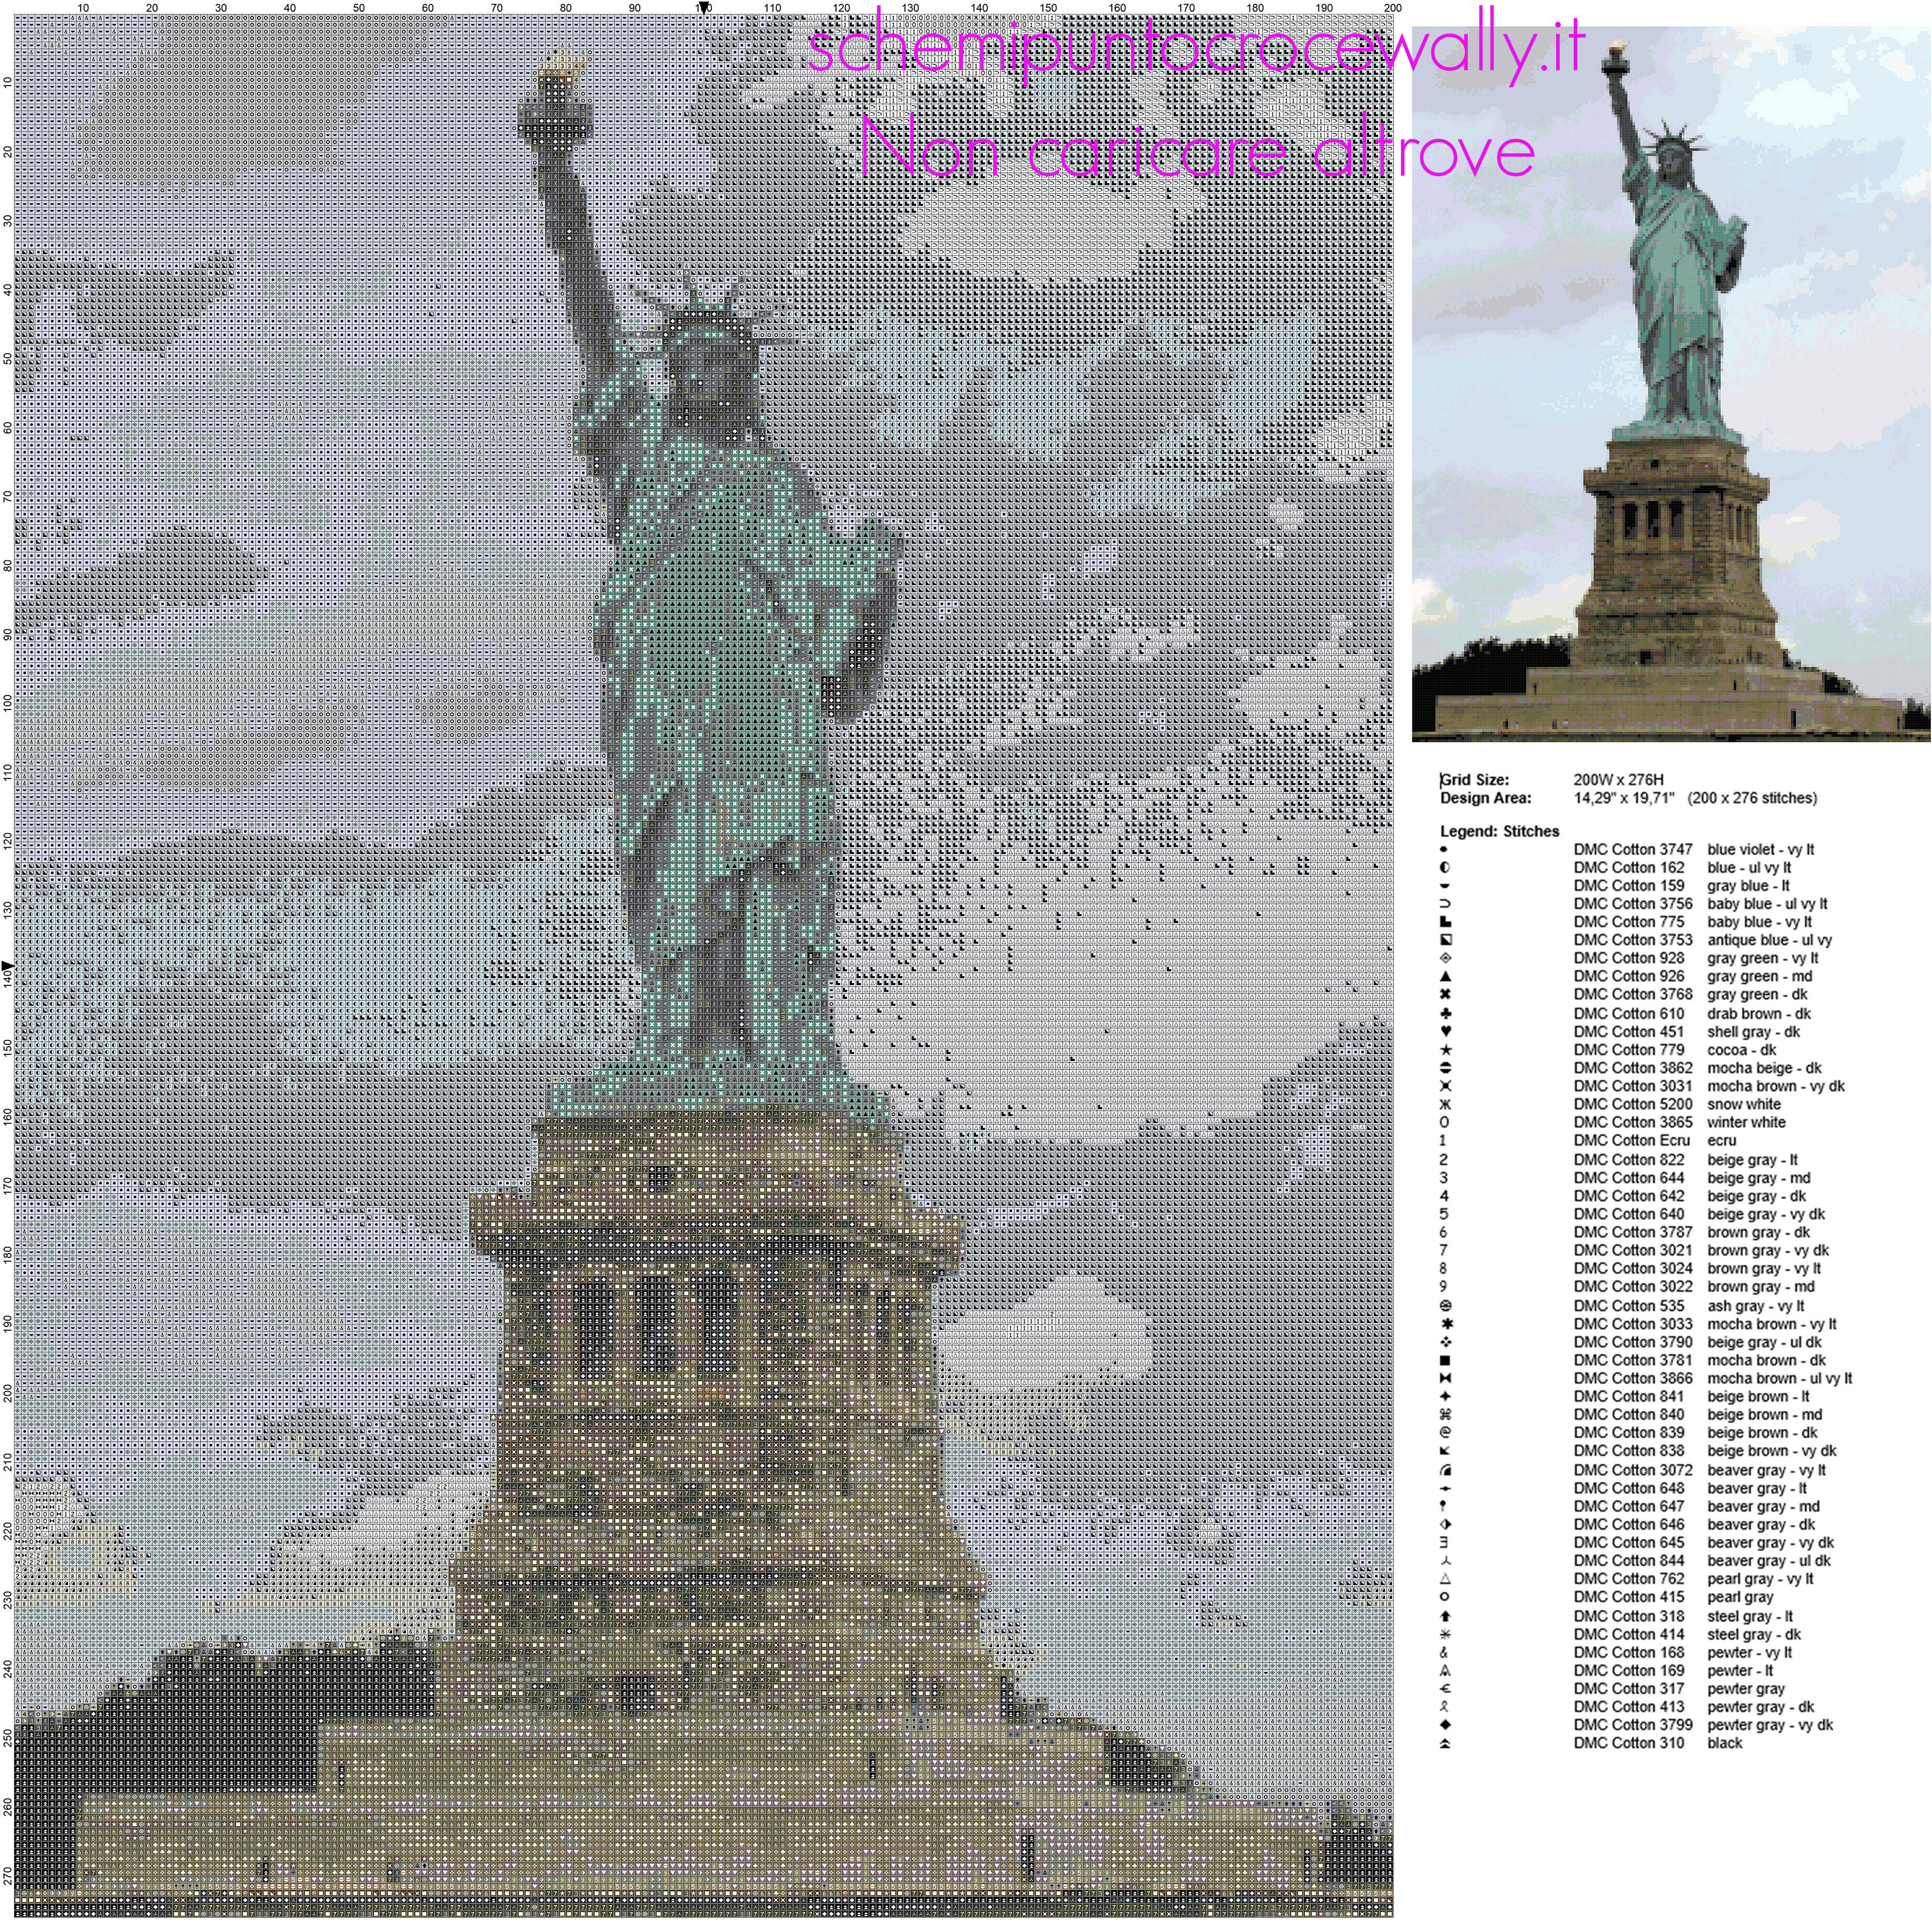 La Statua della Libertà  in America schema punto croce luogo famoso idea quadro casa